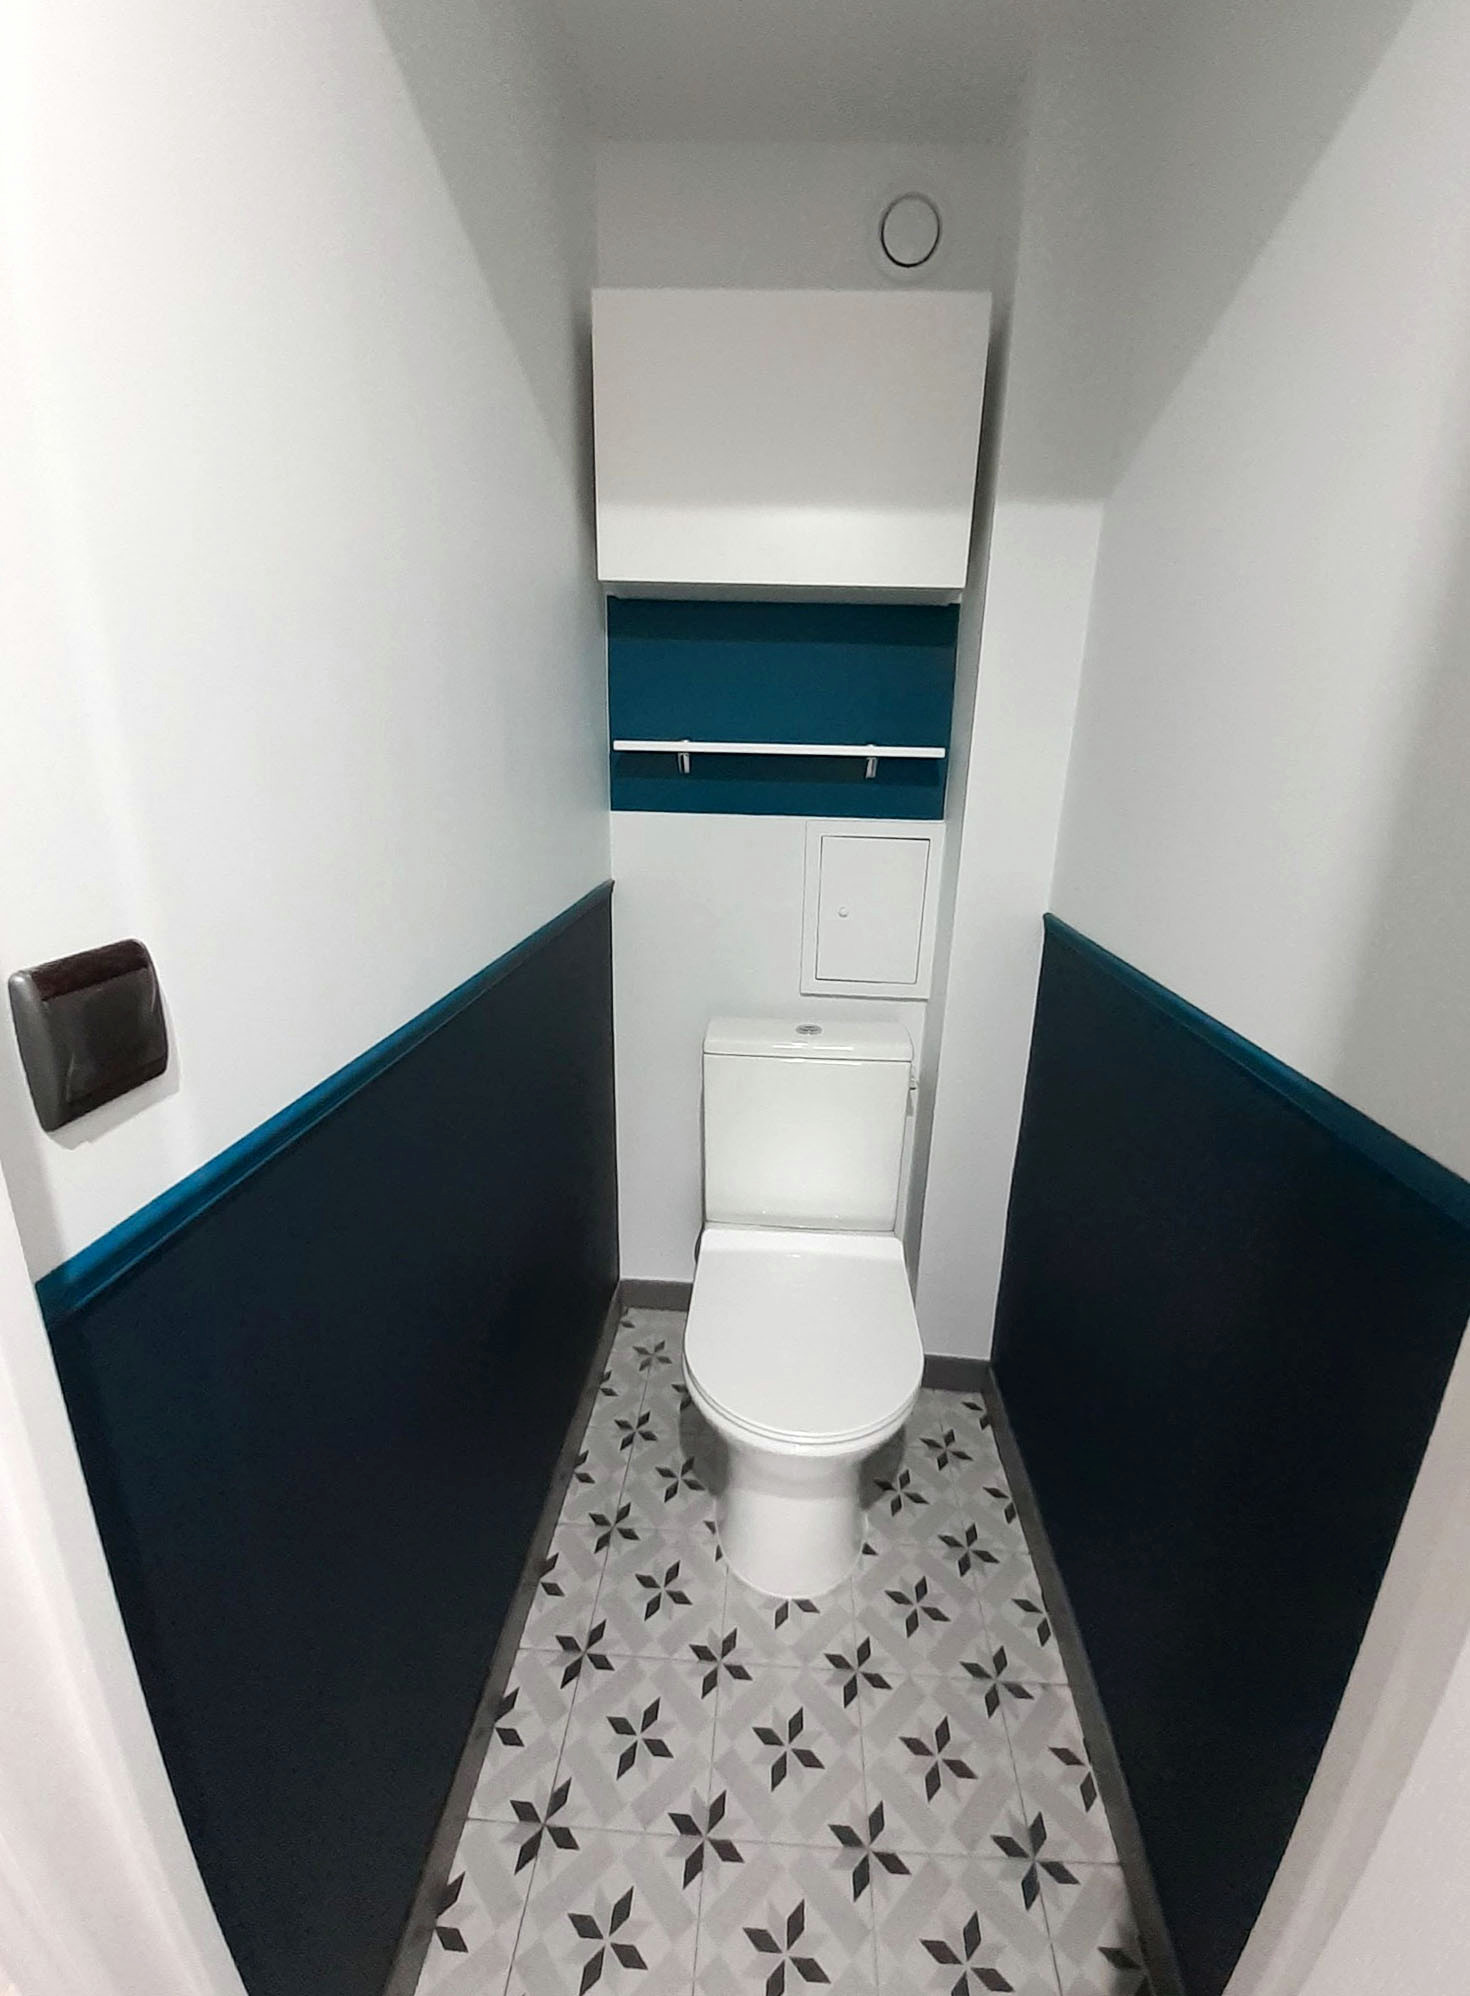 Rénovation d'un appartement / toilette 1 m²